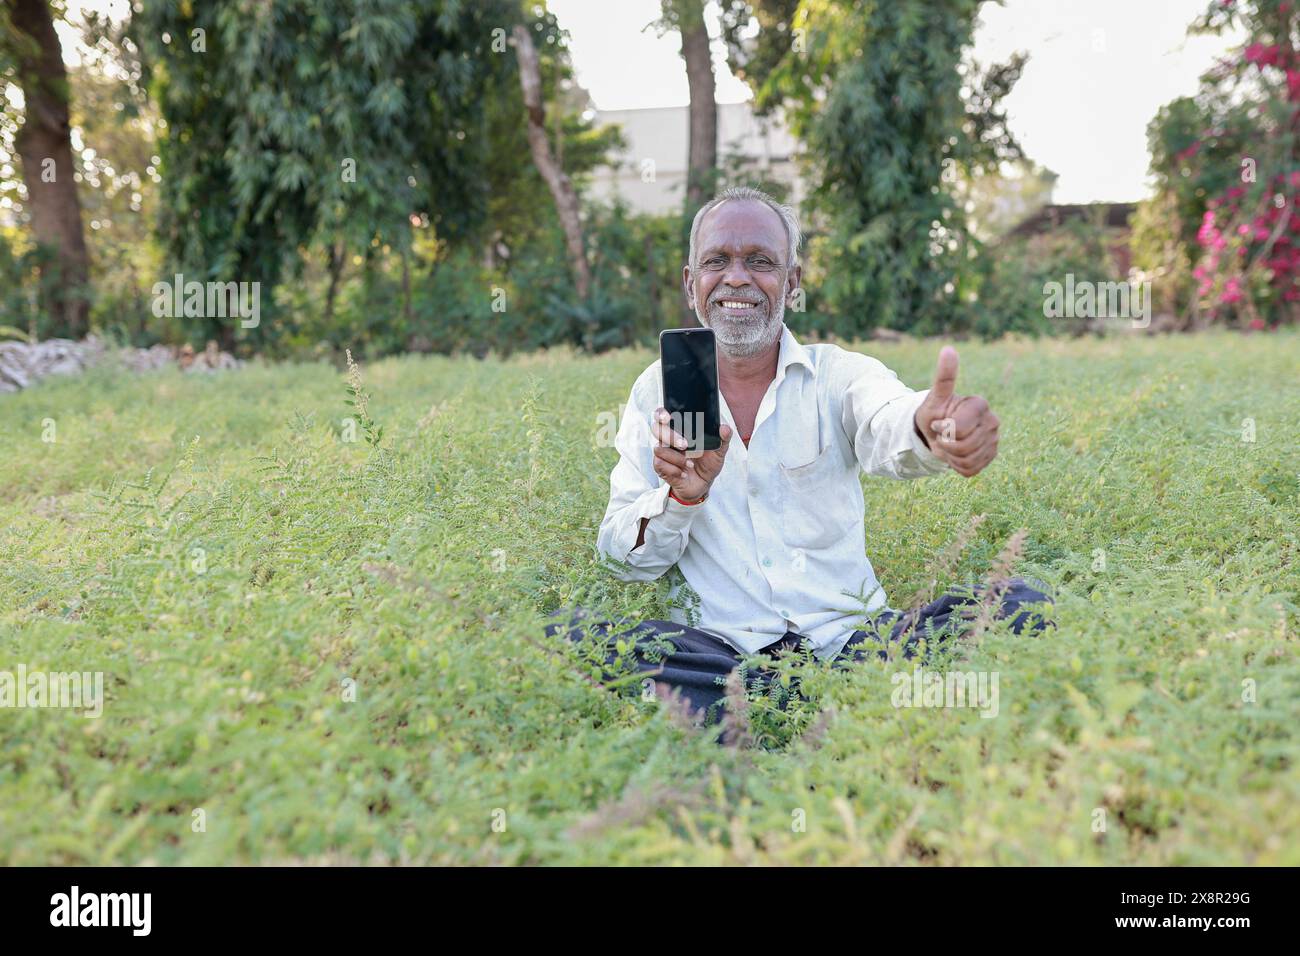 Élevage de pois chiches indiens, fermier indien heureux tenant le téléphone portable dans les mains, pauvre fermier heureux Banque D'Images